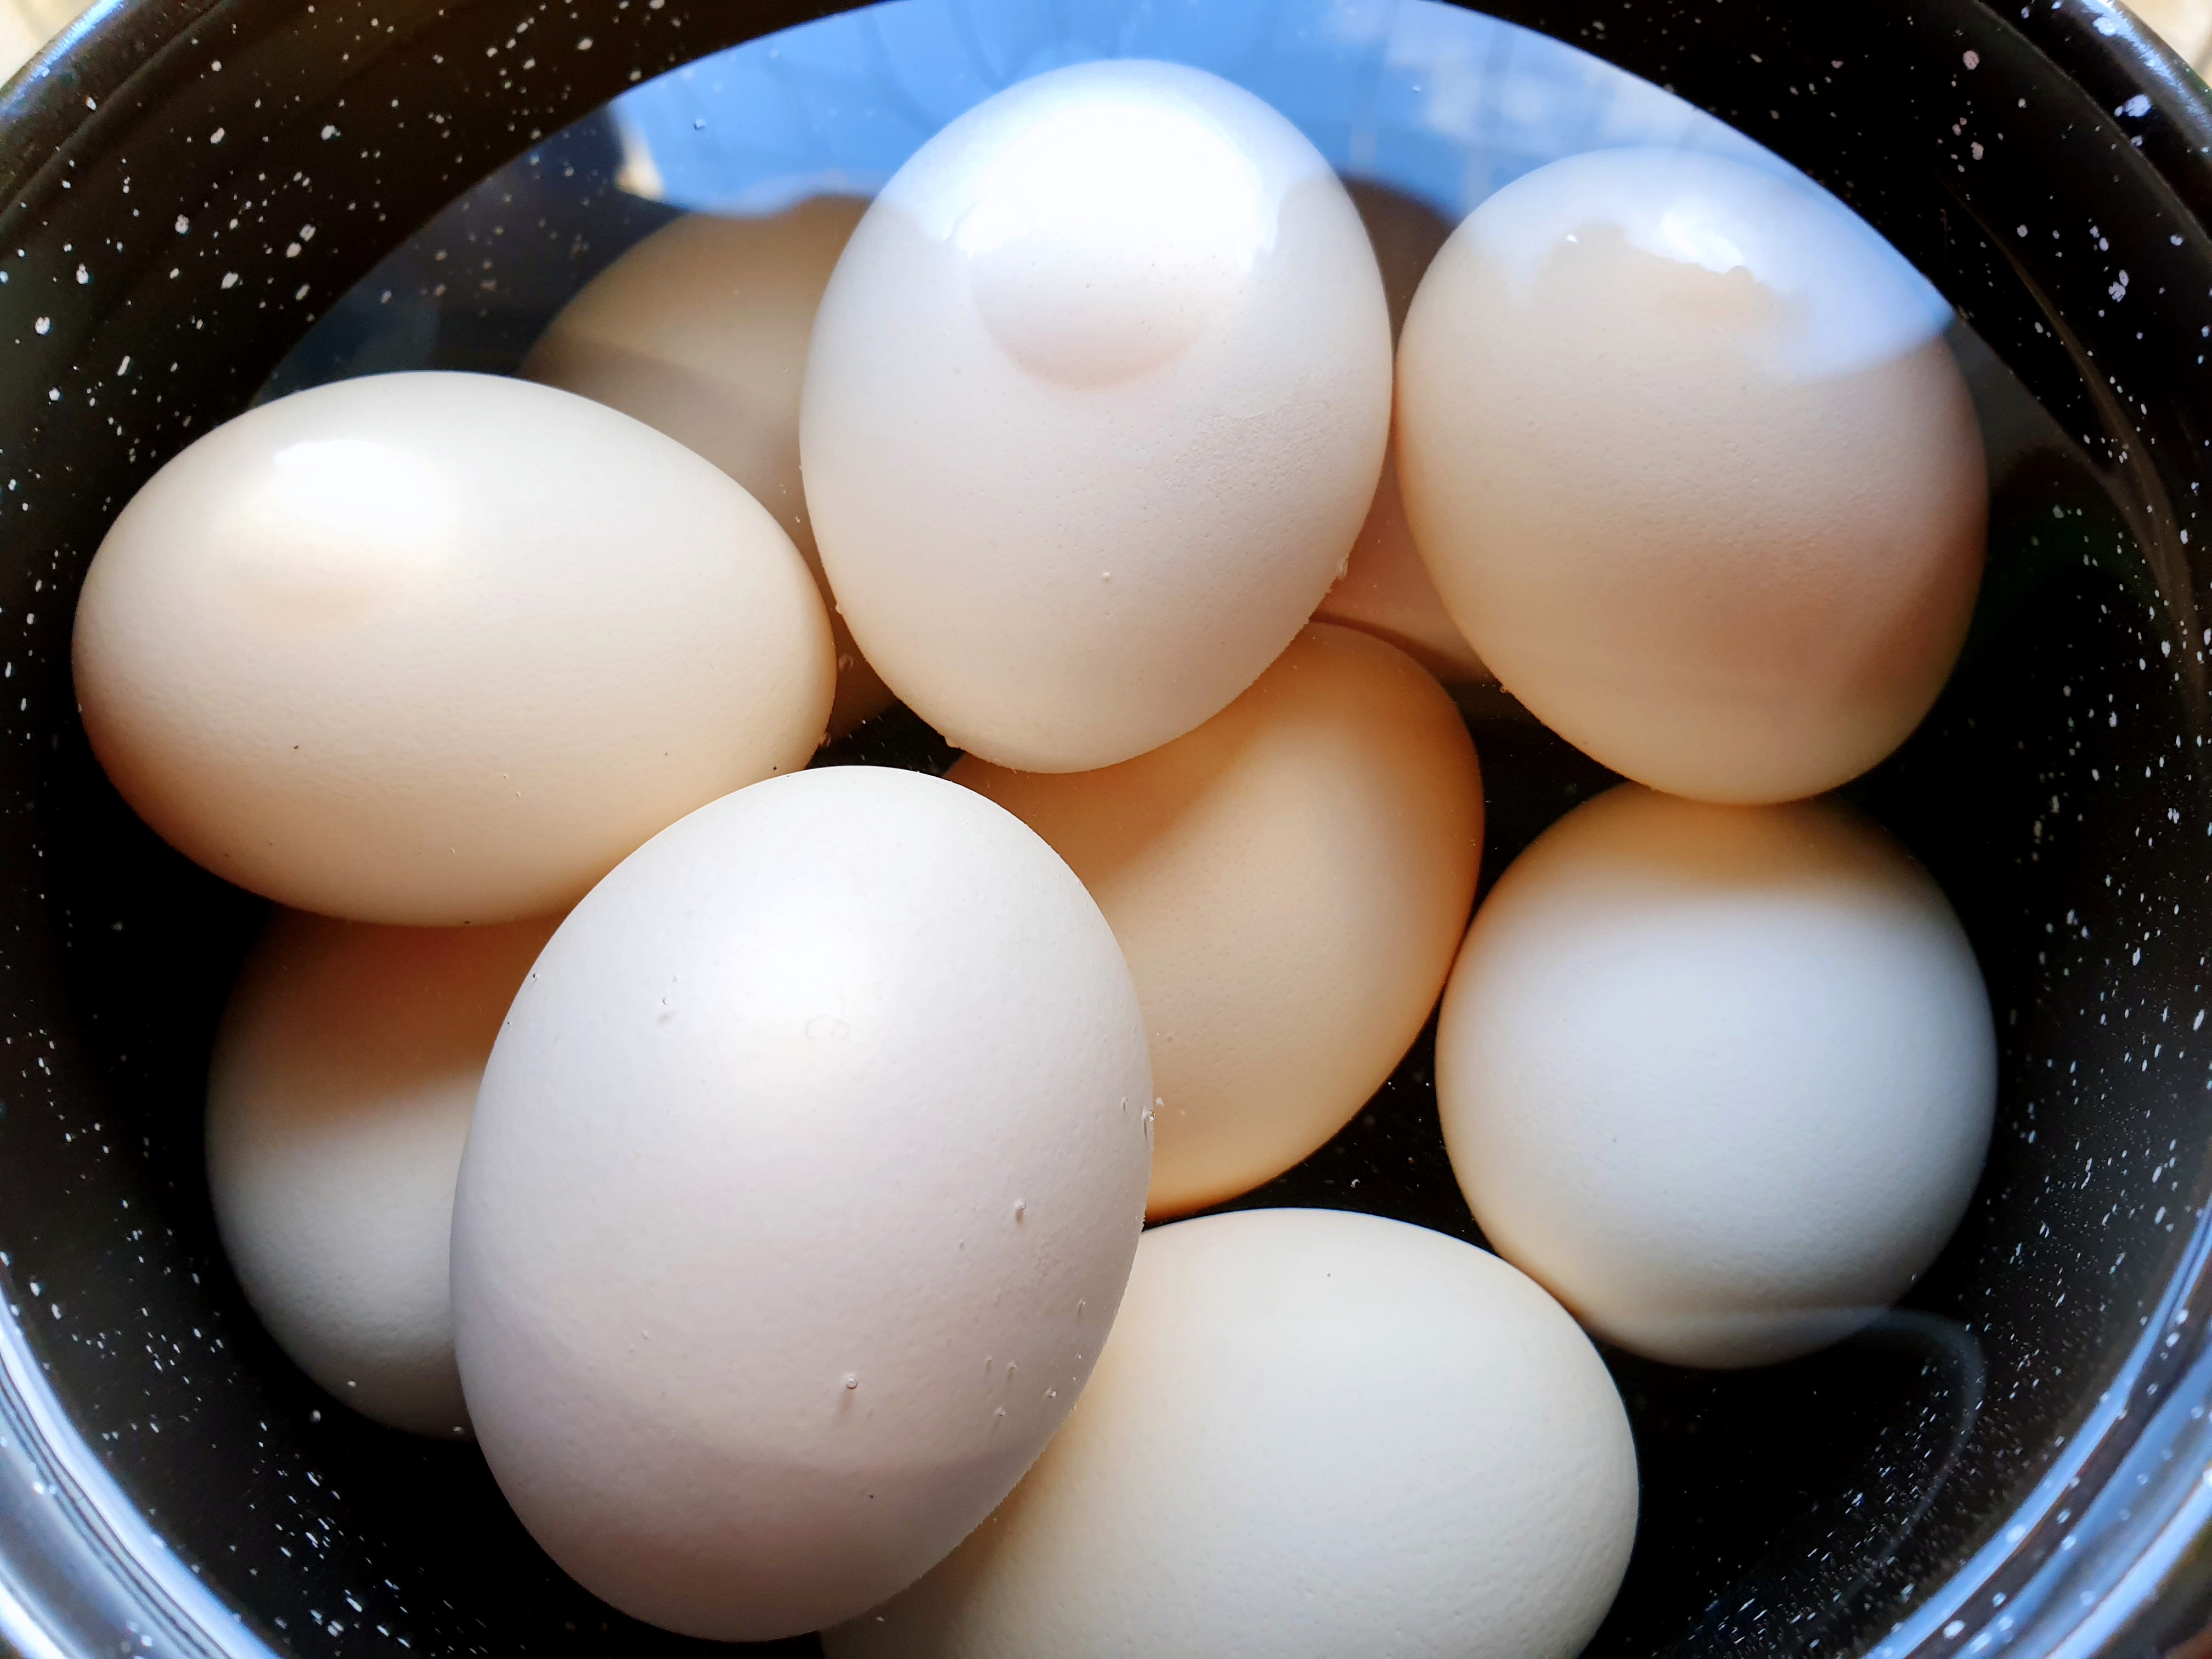 Oua vopsite cu ajutorul orezului, cu vopsea uscata